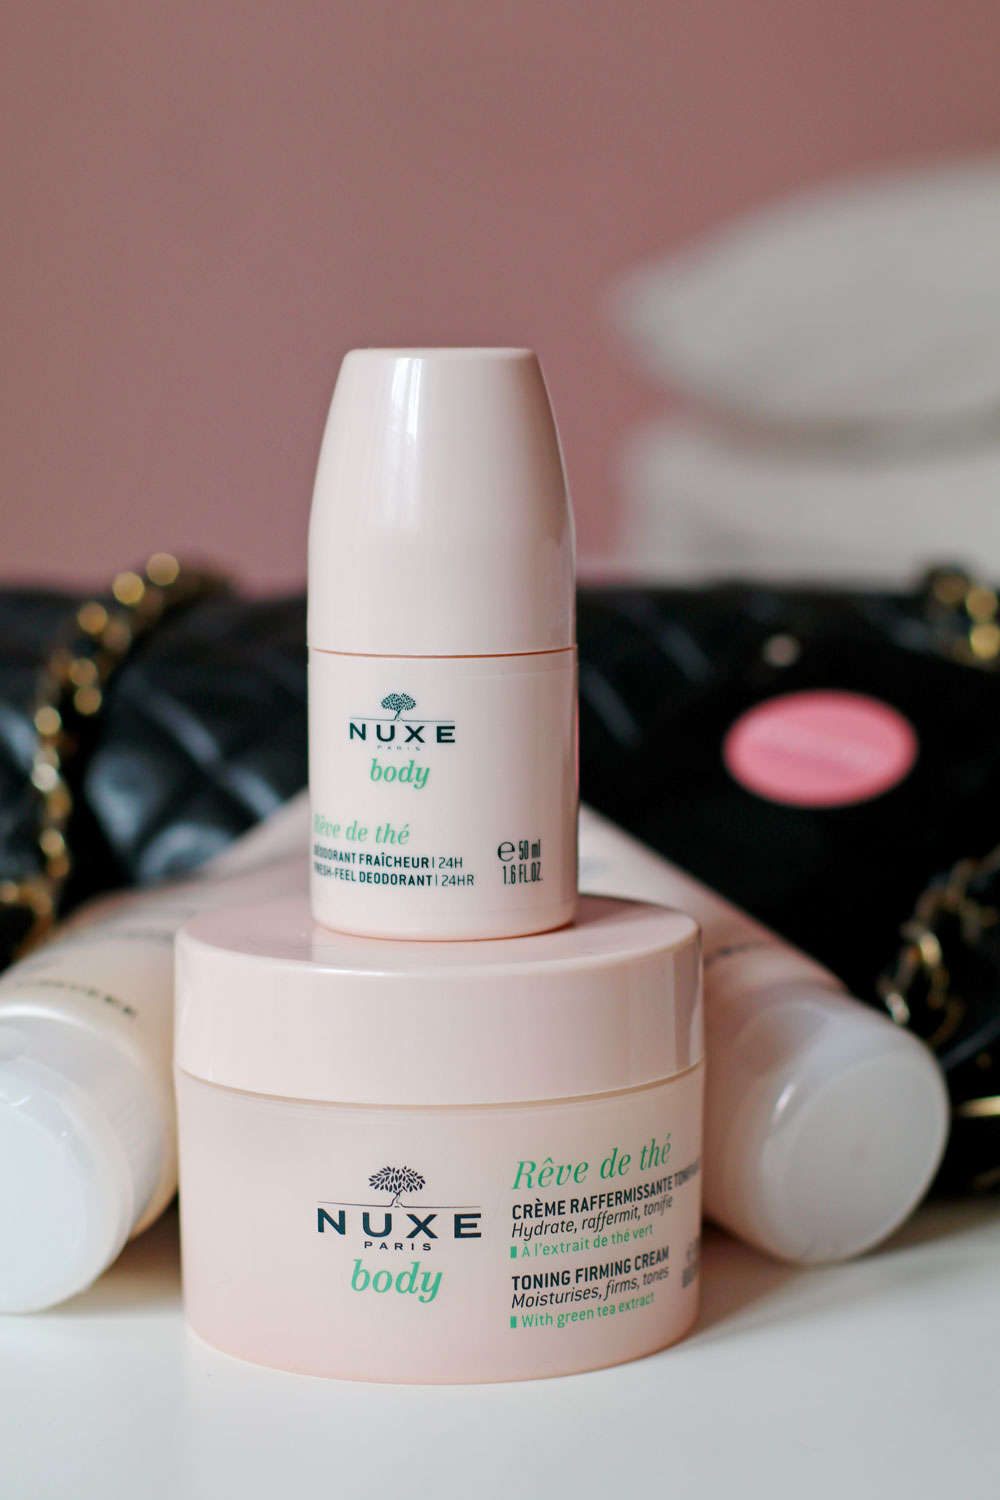 Die neue Körperpflege-Linie Nuxe Rêve de thé punktet mit tollen Texturen und einem bezaubernden Duft. 